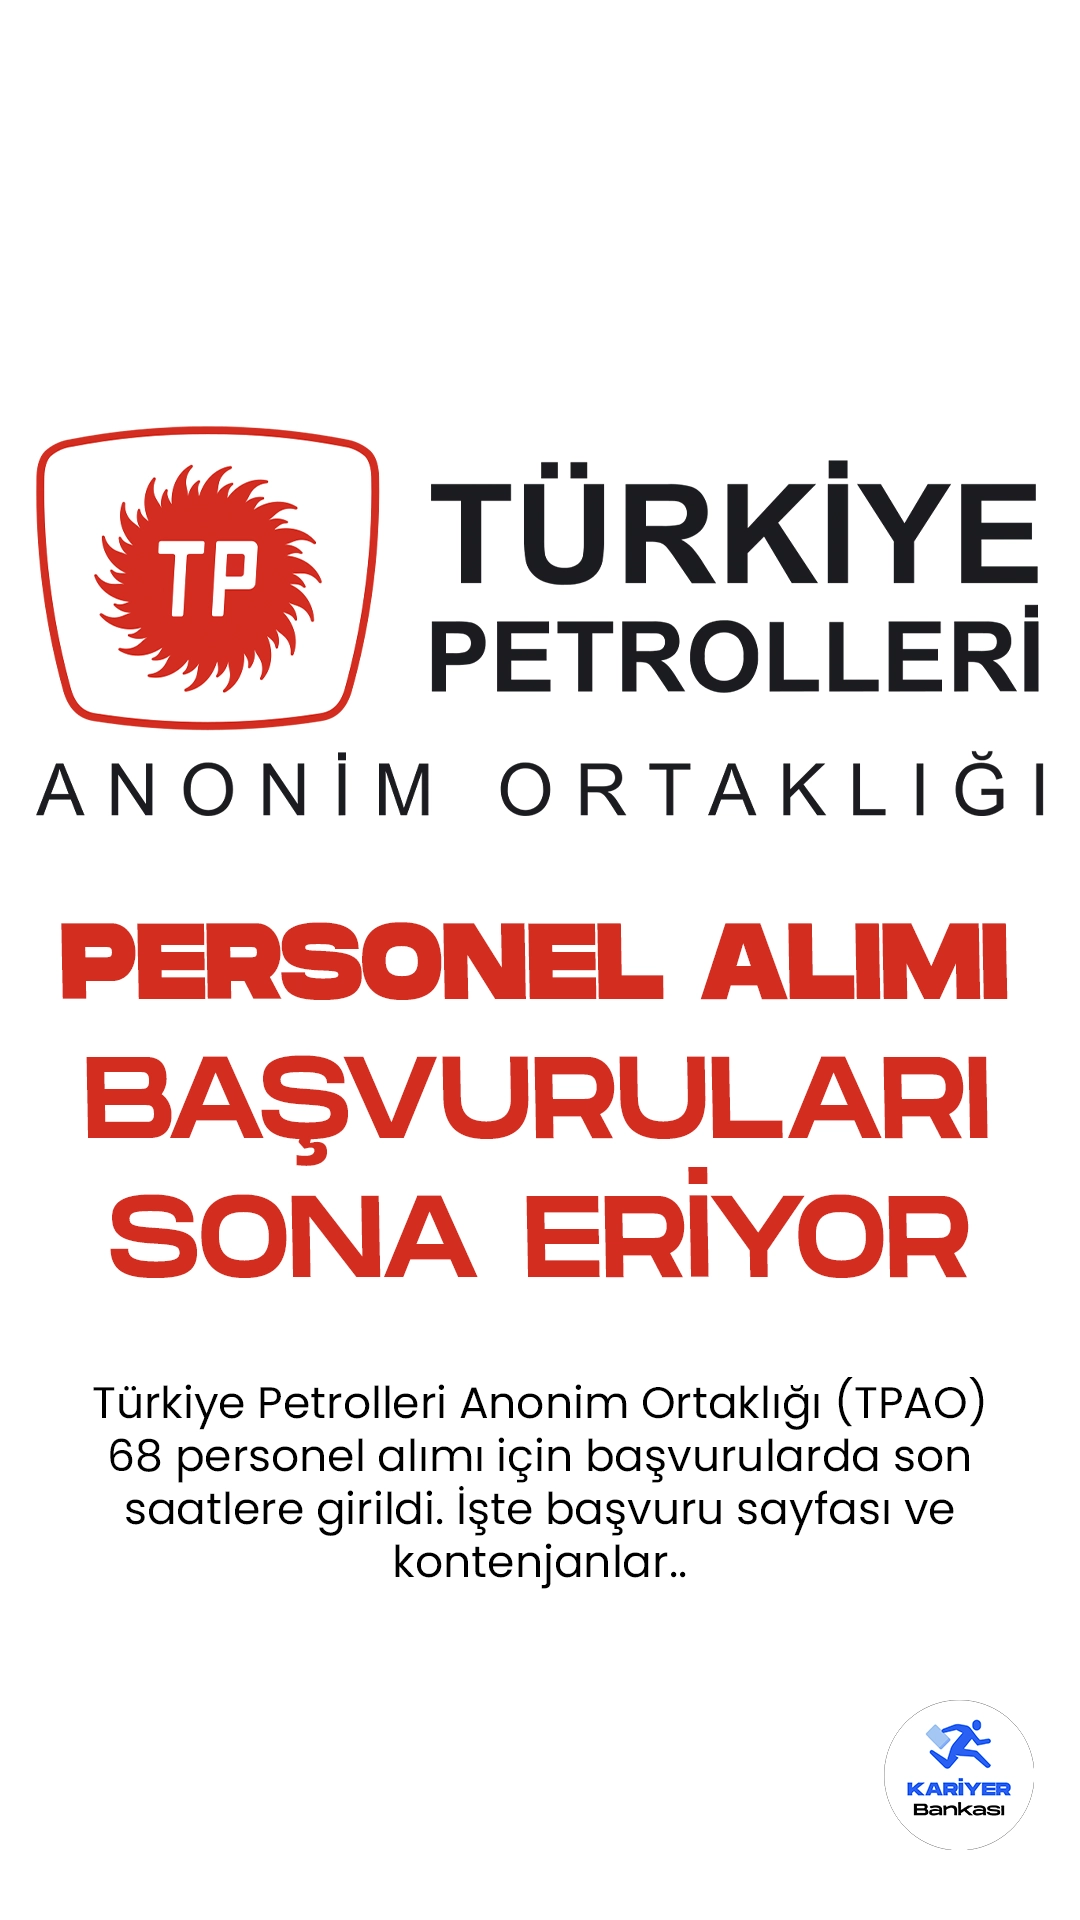 Türkiye Petrolleri Anonim Ortaklığı (TPAO) 68 personel alımı için başvurularda son saatlere girildi. İlgili alım duyurusuna göre, TPAO’ya mühendis, avukat ve uzman yardımcısı ünvanlarında personel alımı yapılacak.Başvurular bugün (13 Ekim 2023) sona erecek.